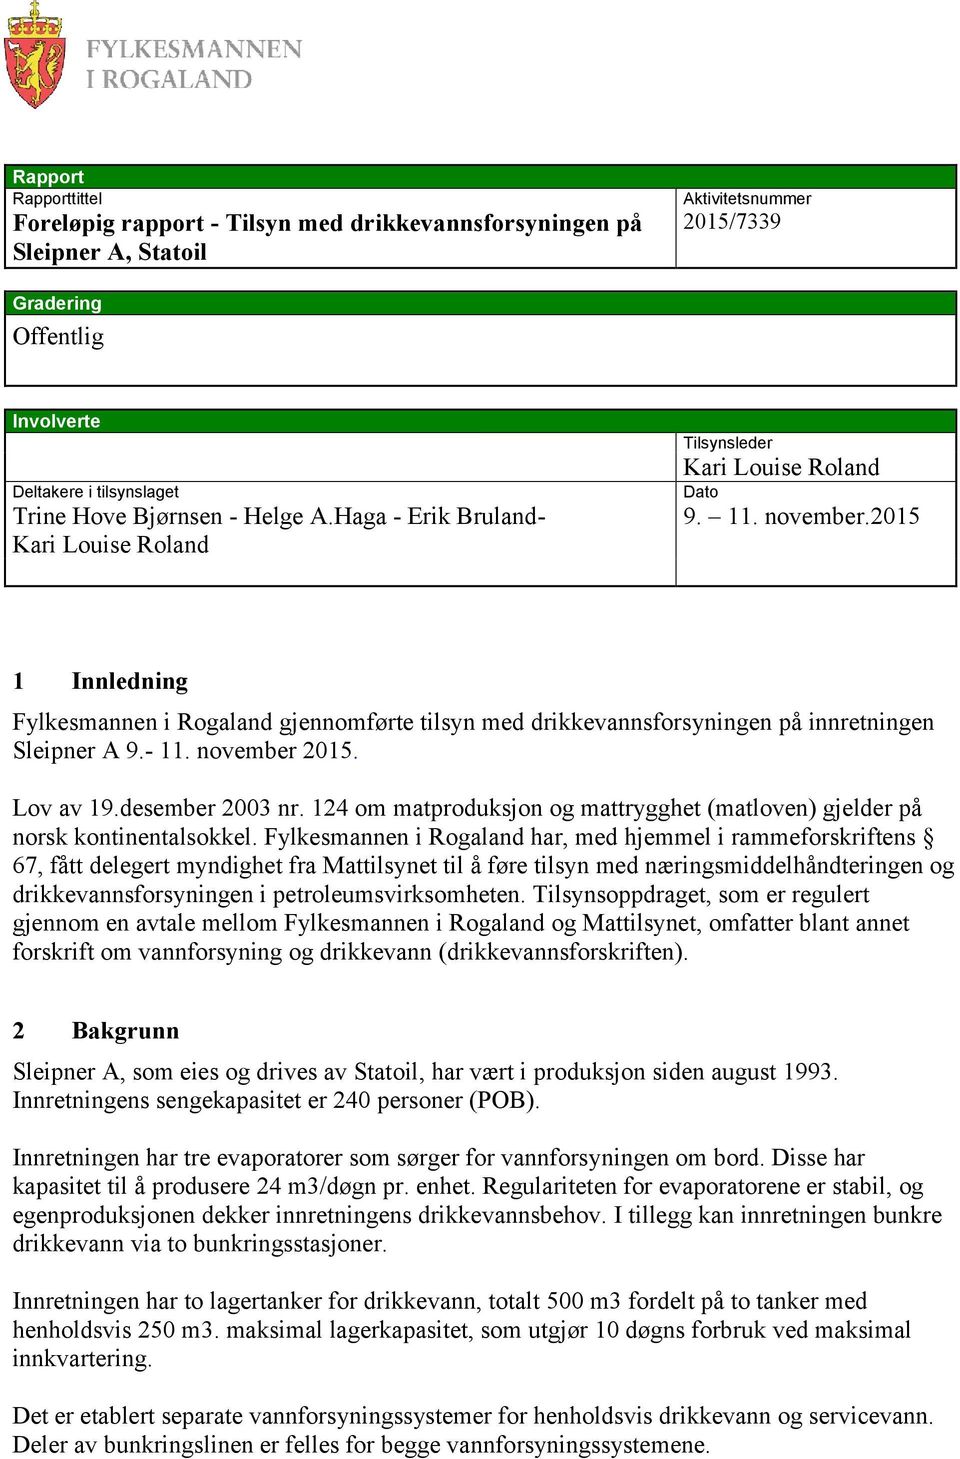 2015 1 Innledning Fylkesmannen i Rogaland gjennomførte tilsyn med drikkevannsforsyningen på innretningen Sleipner A 9.- 11. november 2015. Lov av 19.desember 2003 nr.